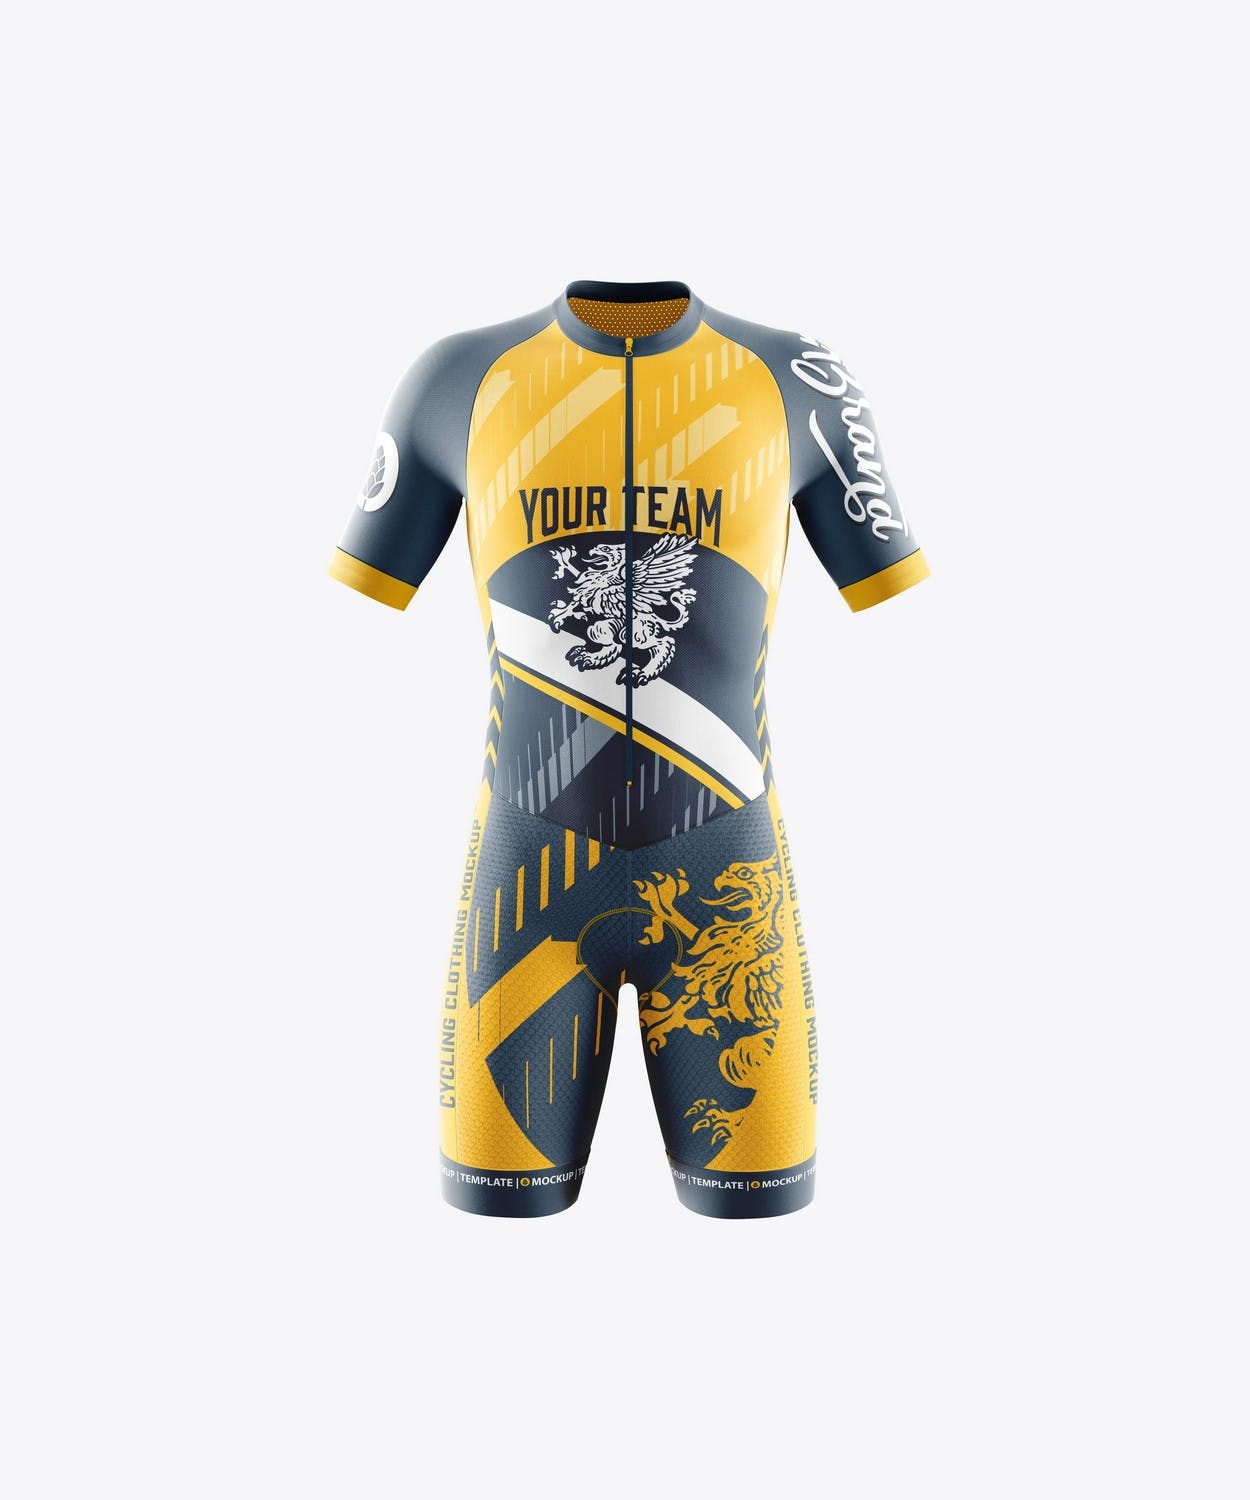 男子运动套装自行车服装品牌设计样机 Sport Cycling Suit for Men Mockup 样机素材 第13张